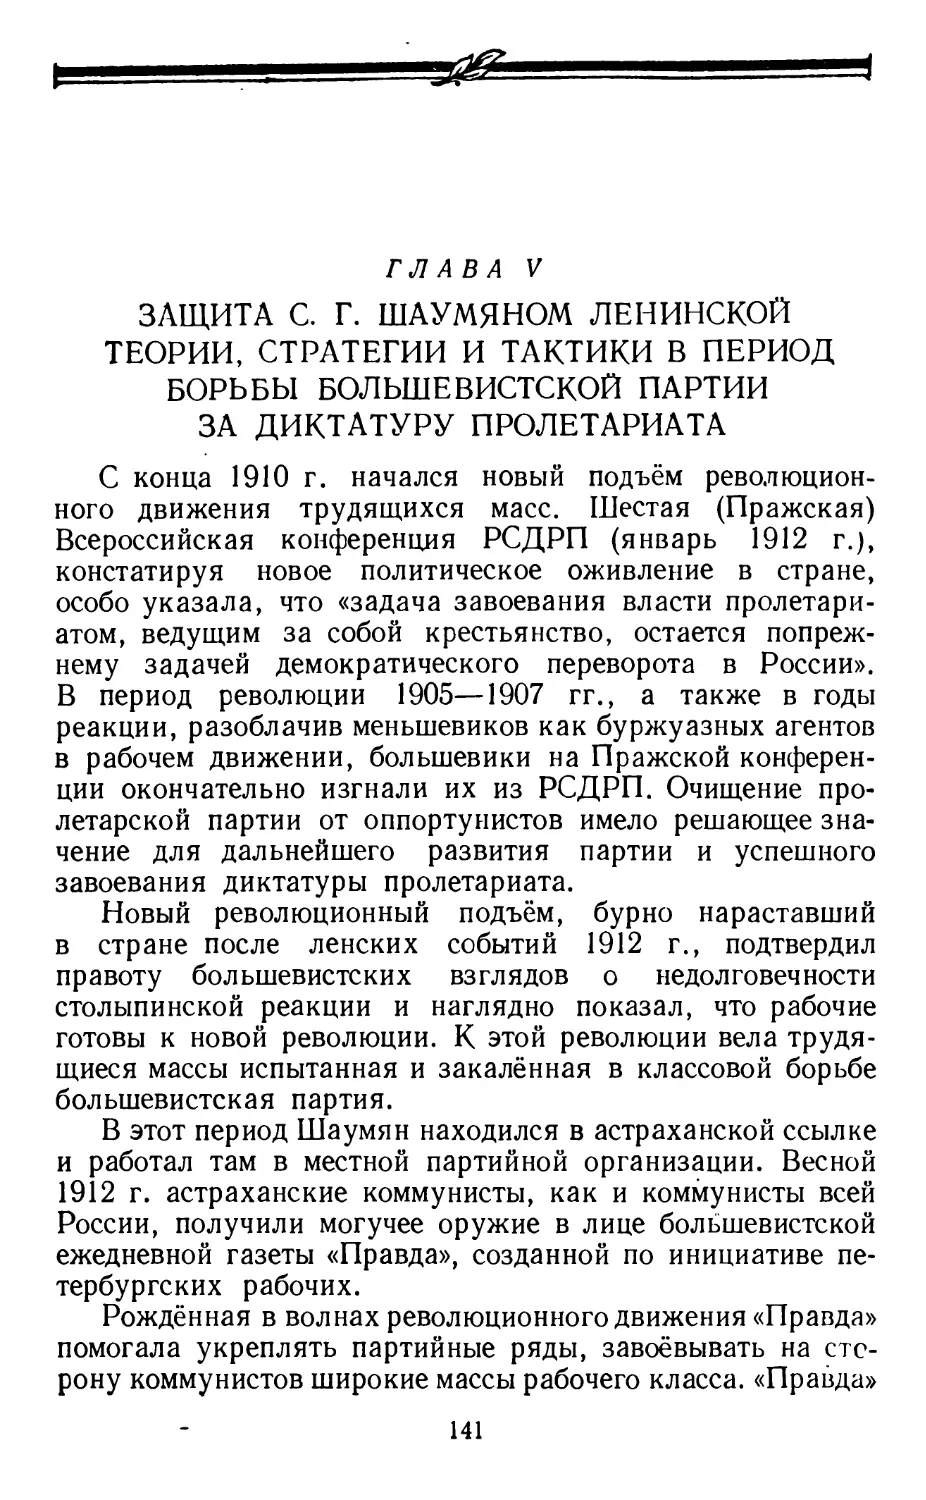 Глава V. Защита С. Г. Шаумяном ленинской теории, стратегии и тактики в период борьбы большевистской партии за диктатуру пролетариата